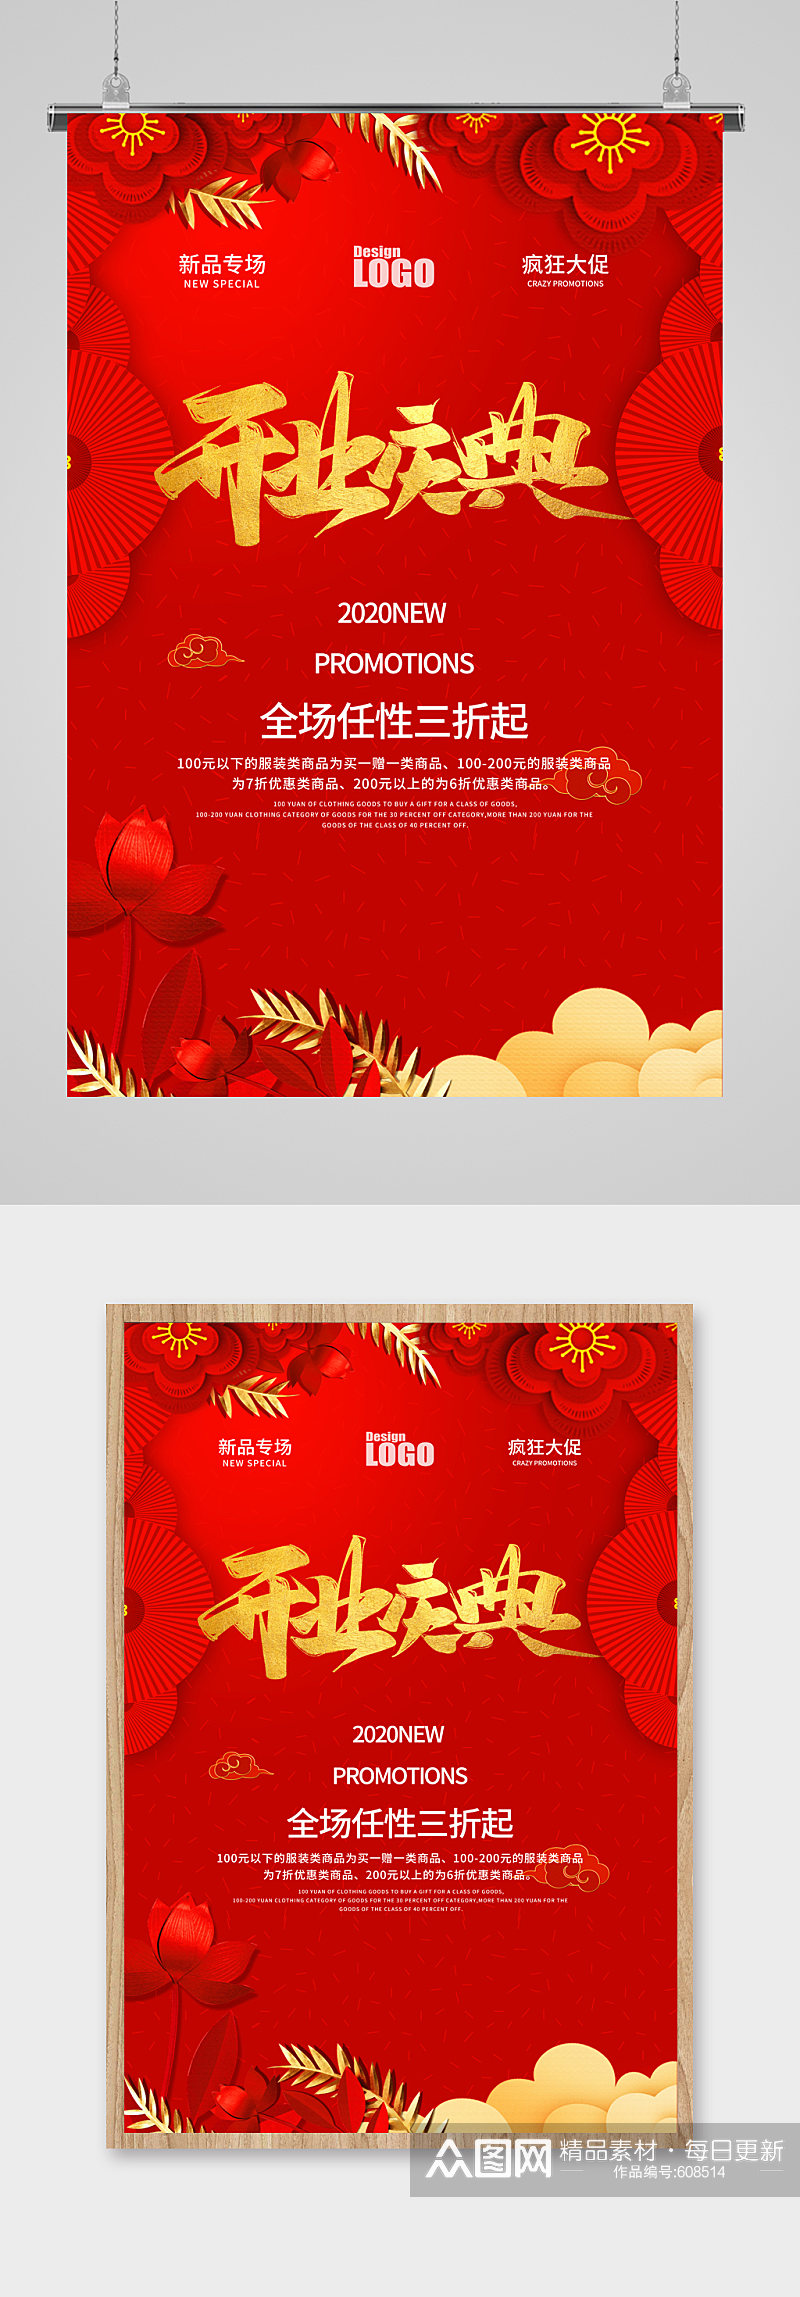 红色中式礼物开业庆典打折新品活动促销海报素材